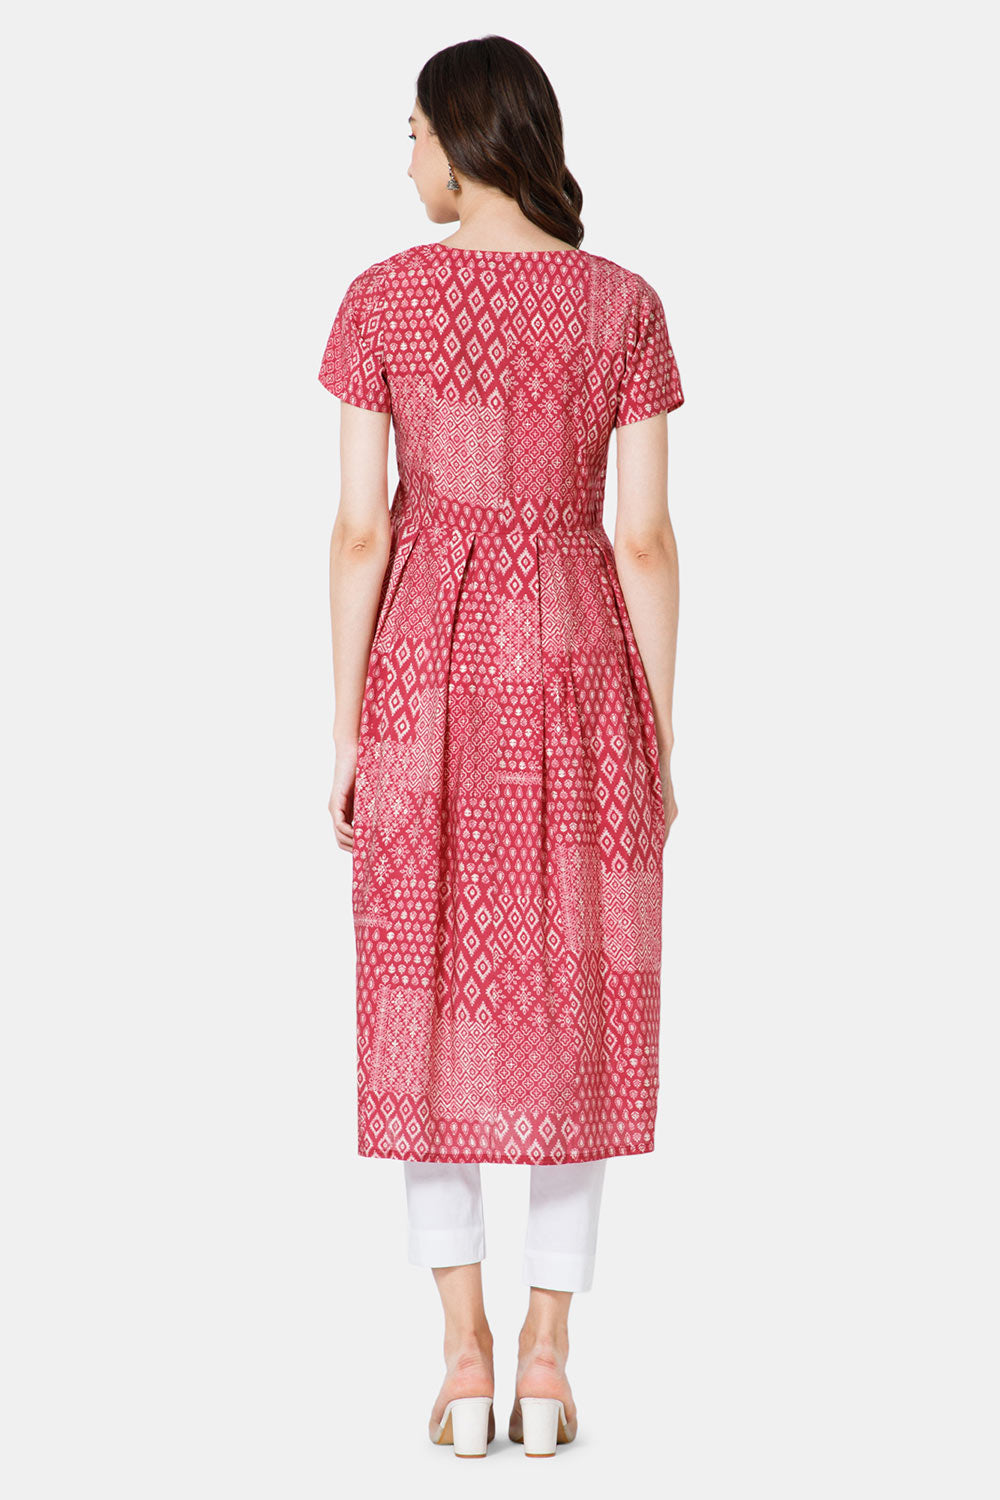 Designer Salwar Suit Online | Maharani Designer Boutique